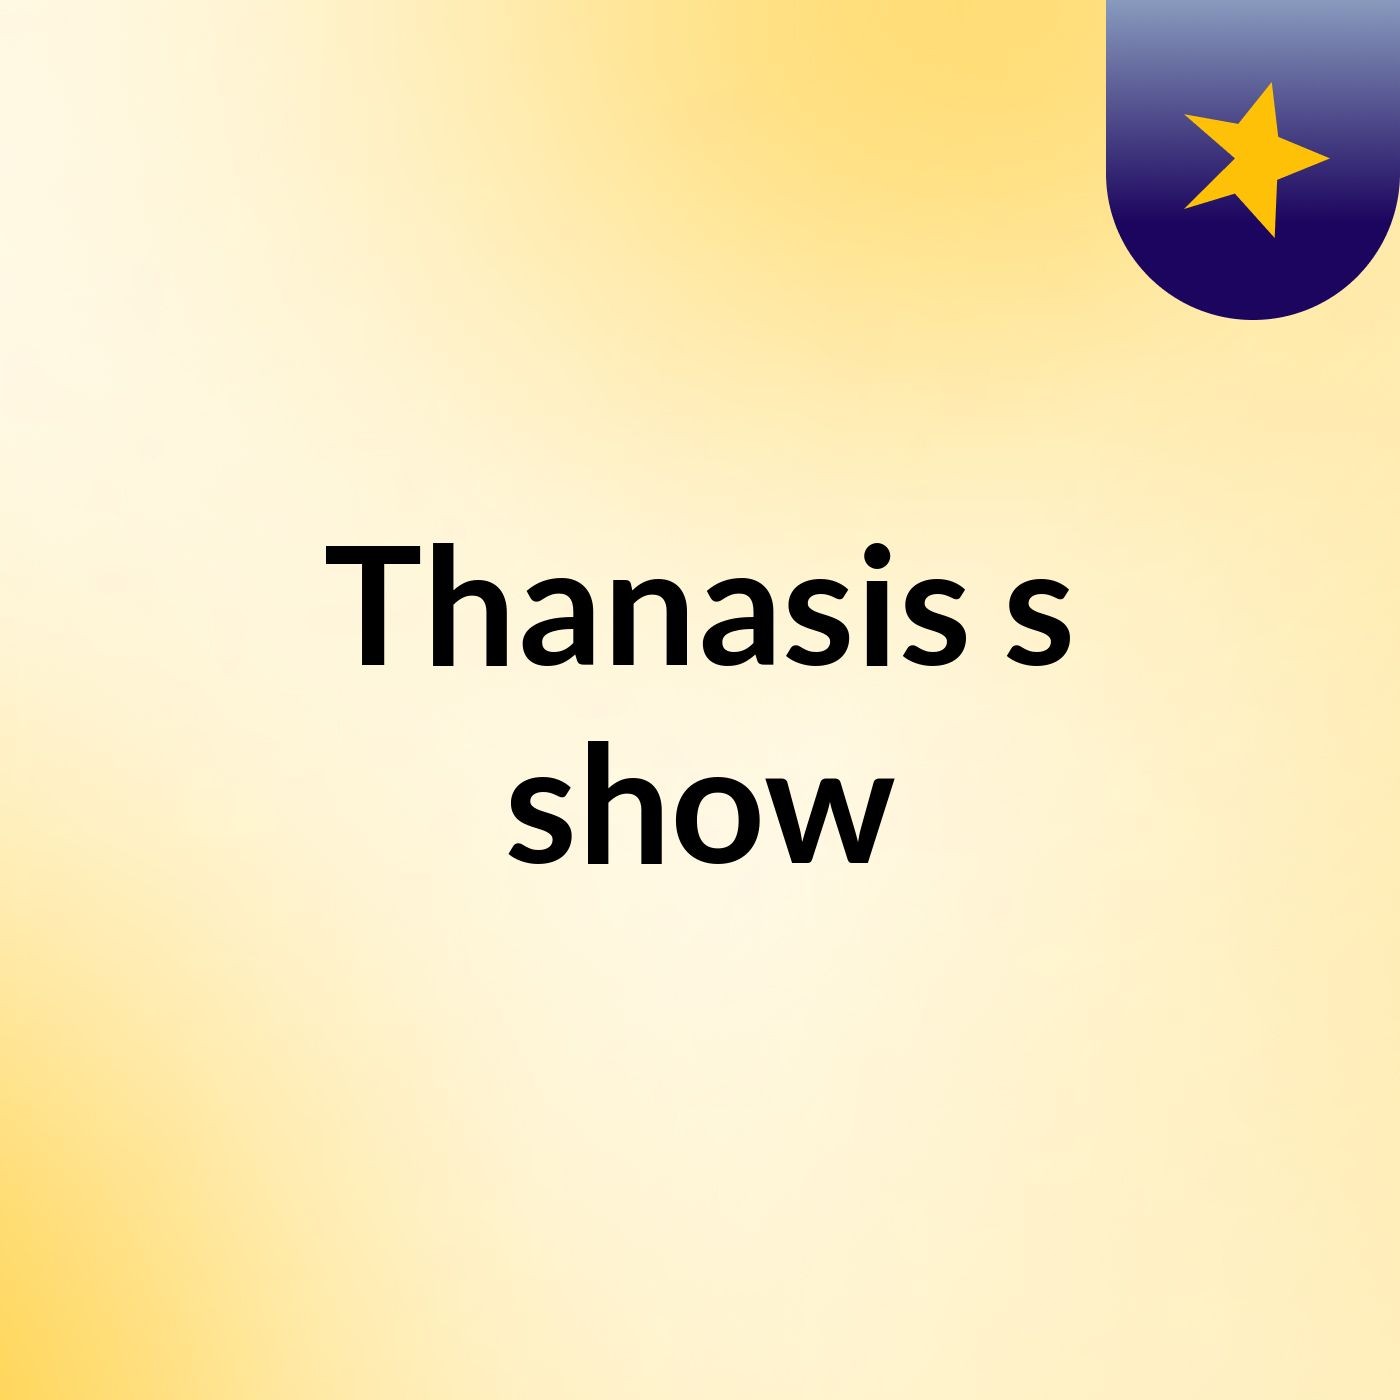 Thanasis's show